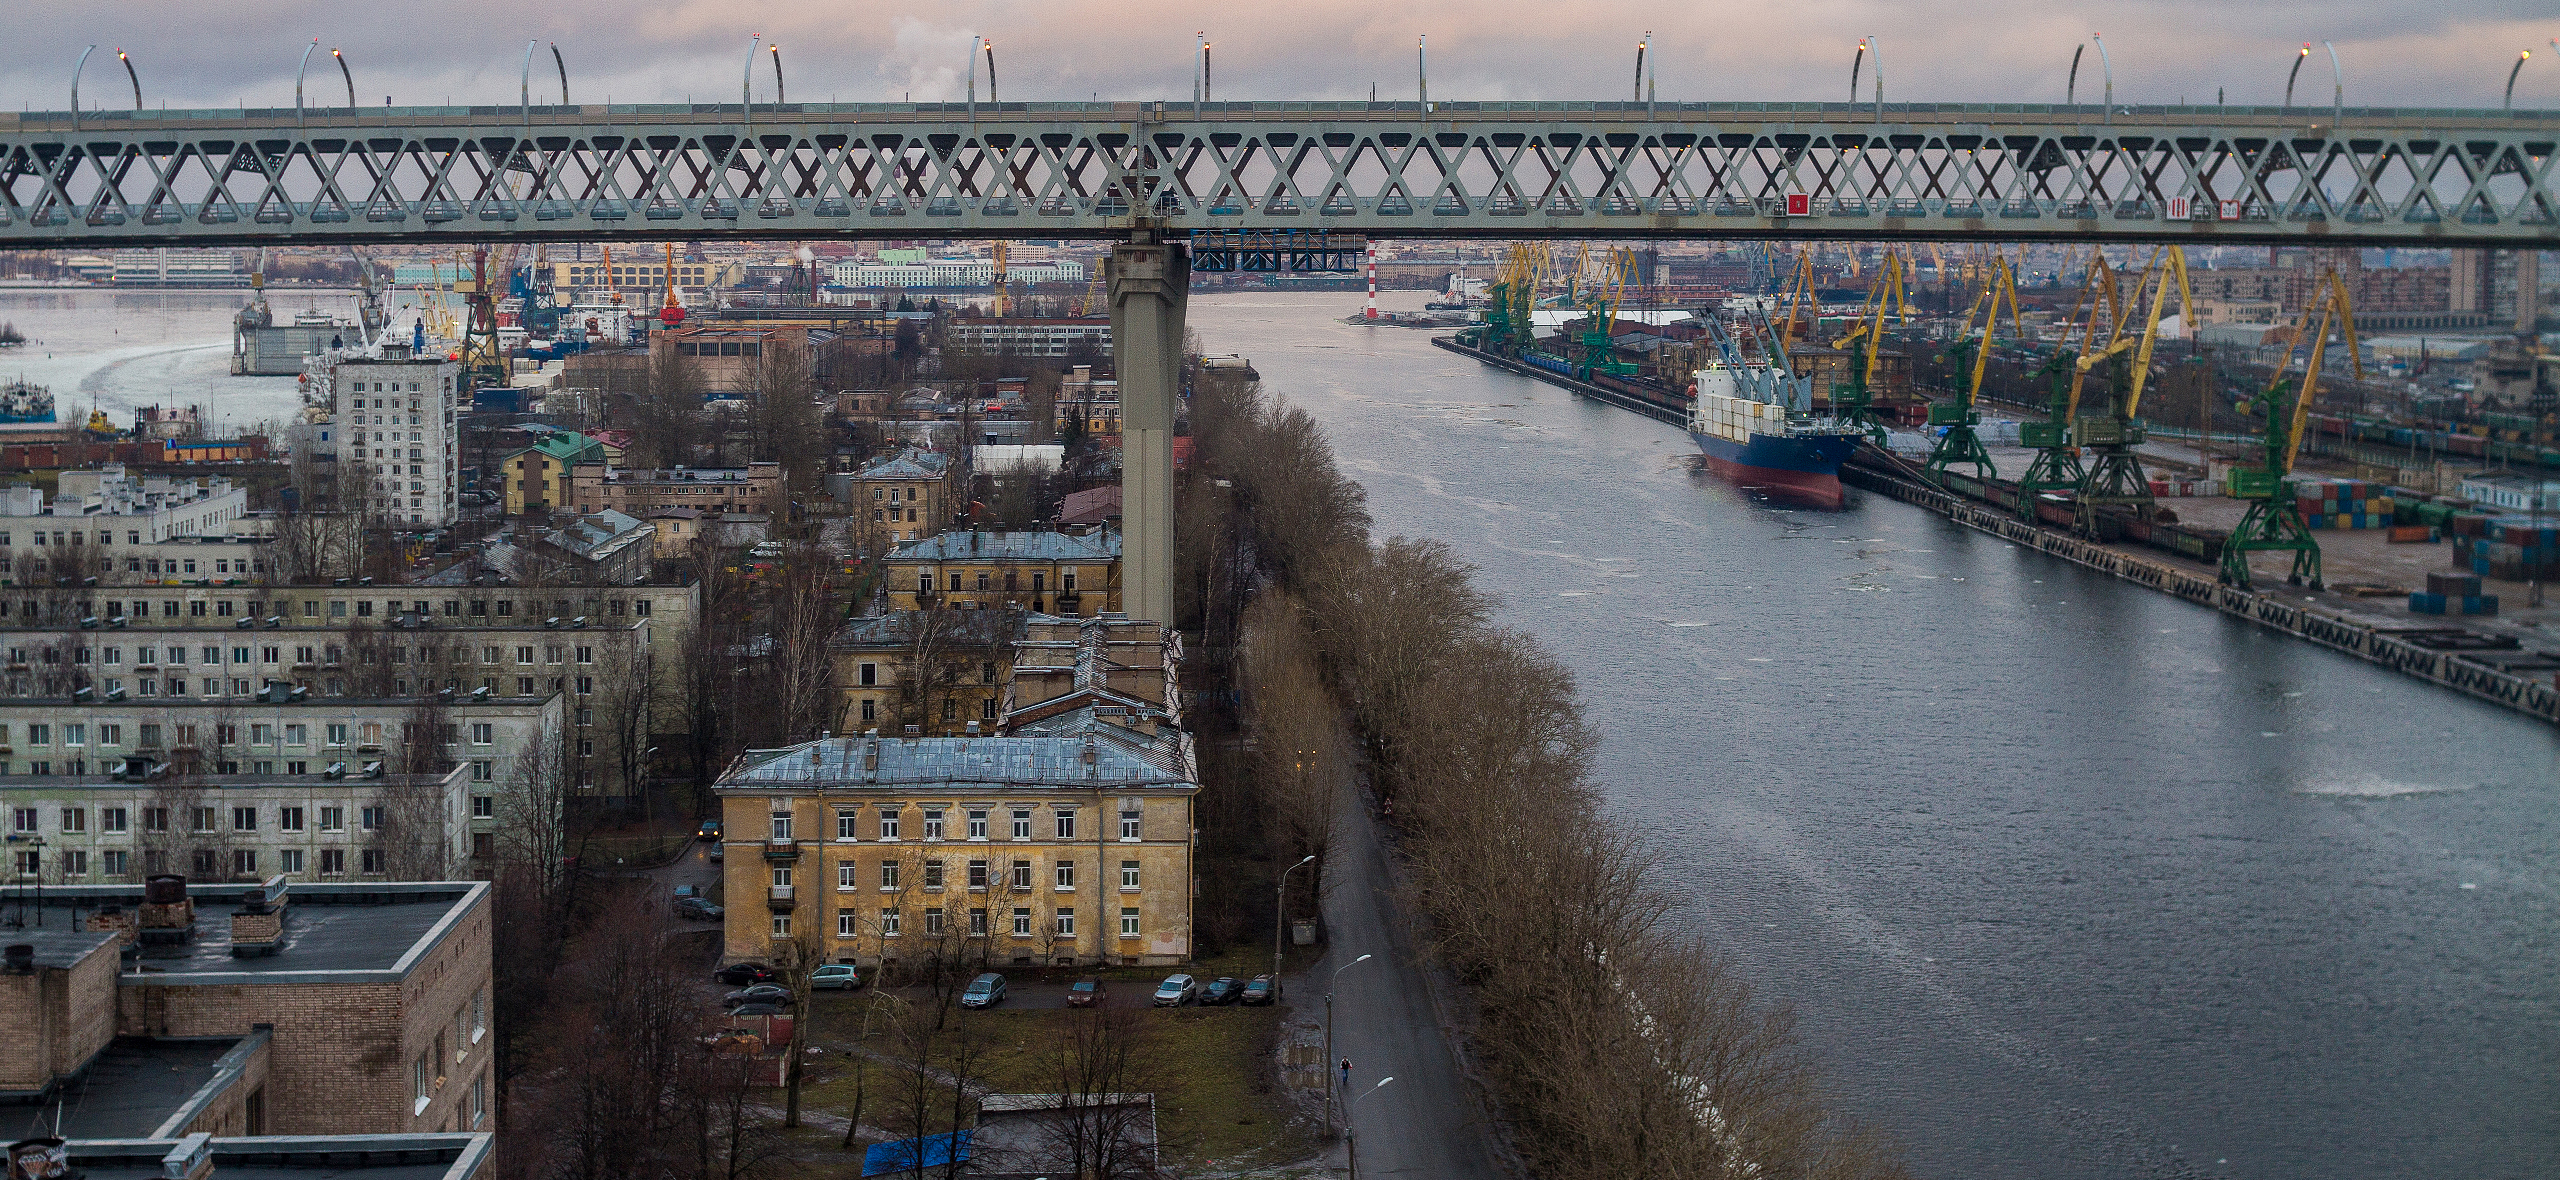 Места в Санкт-Петербурге, где снимали фильмы: 10 кинематографичных локаций